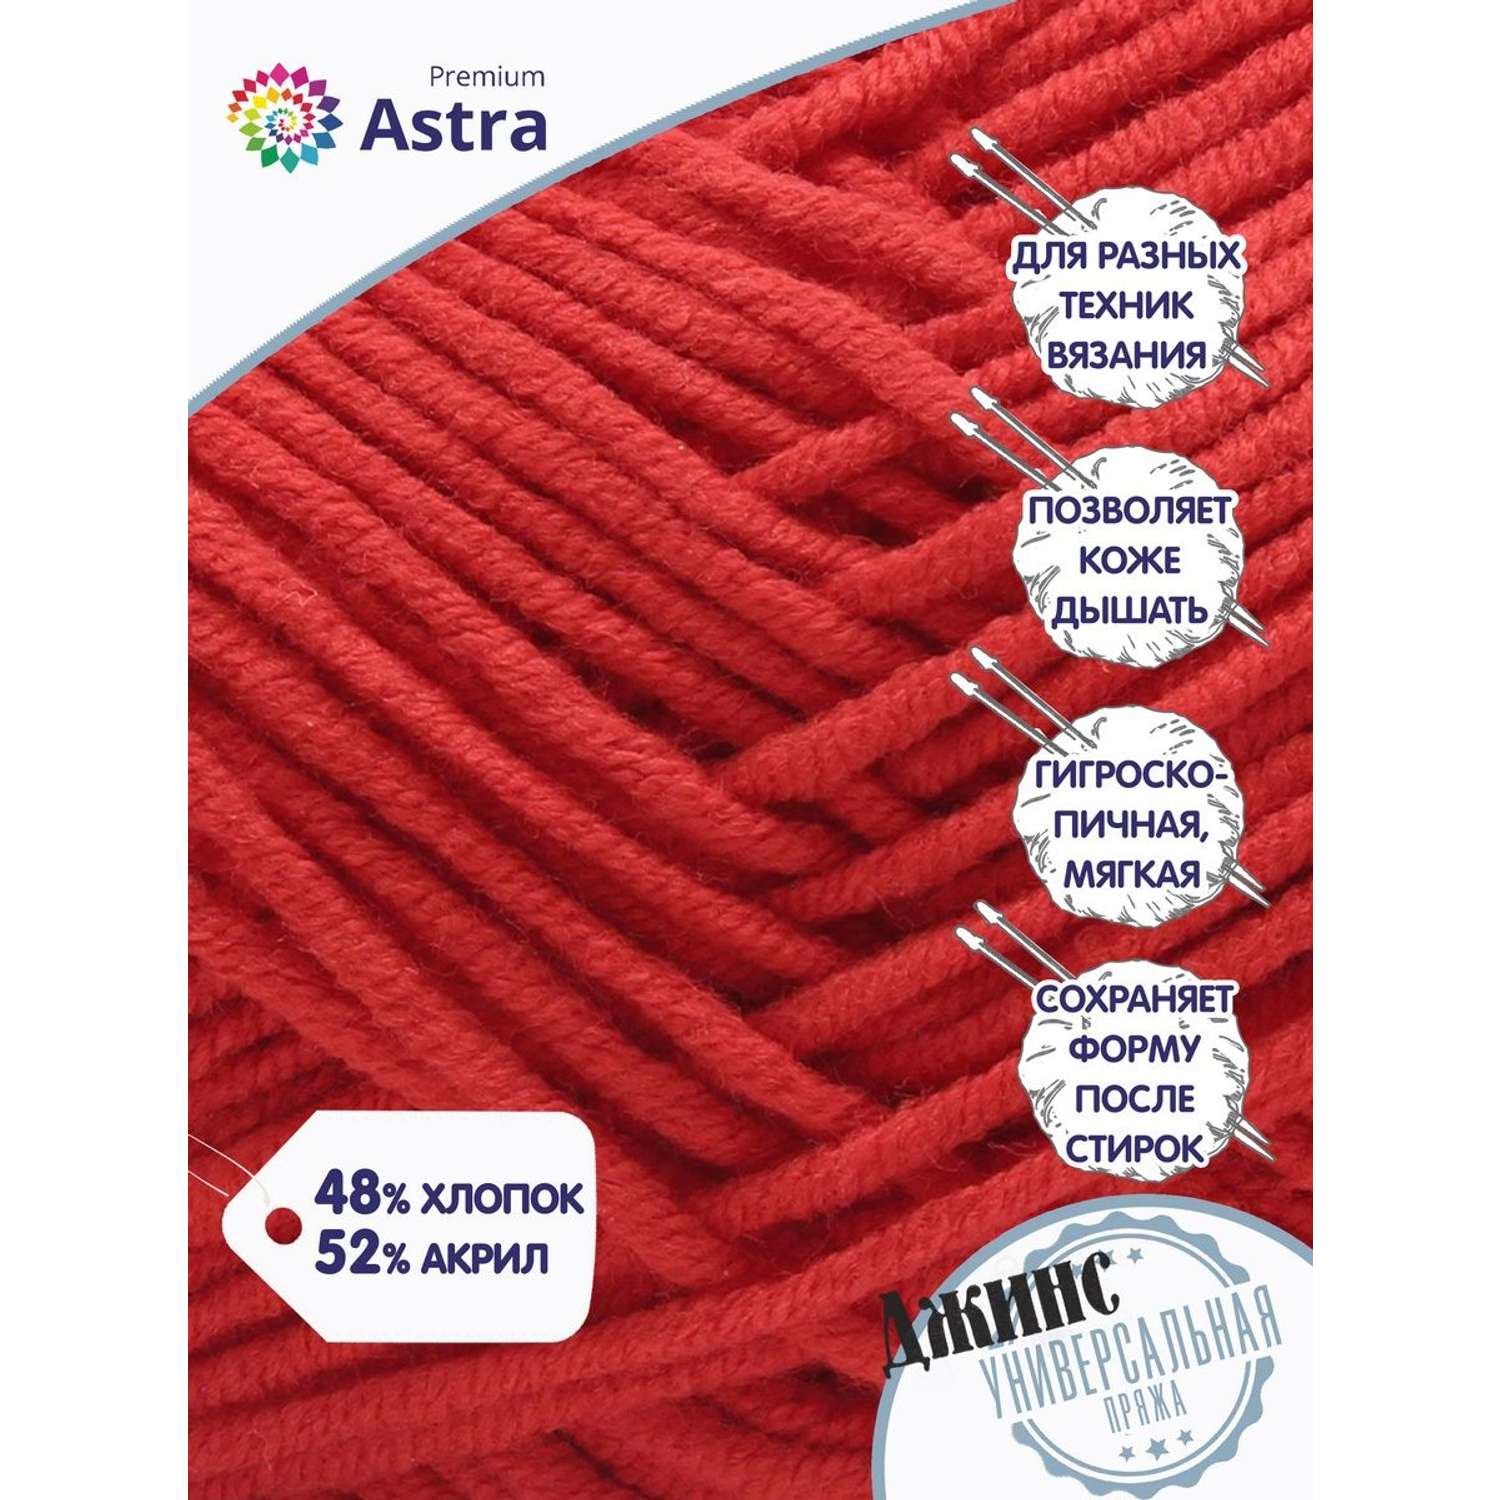 Пряжа для вязания Astra Premium джинс для повседневной одежды акрил хлопок 50 гр 135 м 150 красный 4 мотка - фото 2